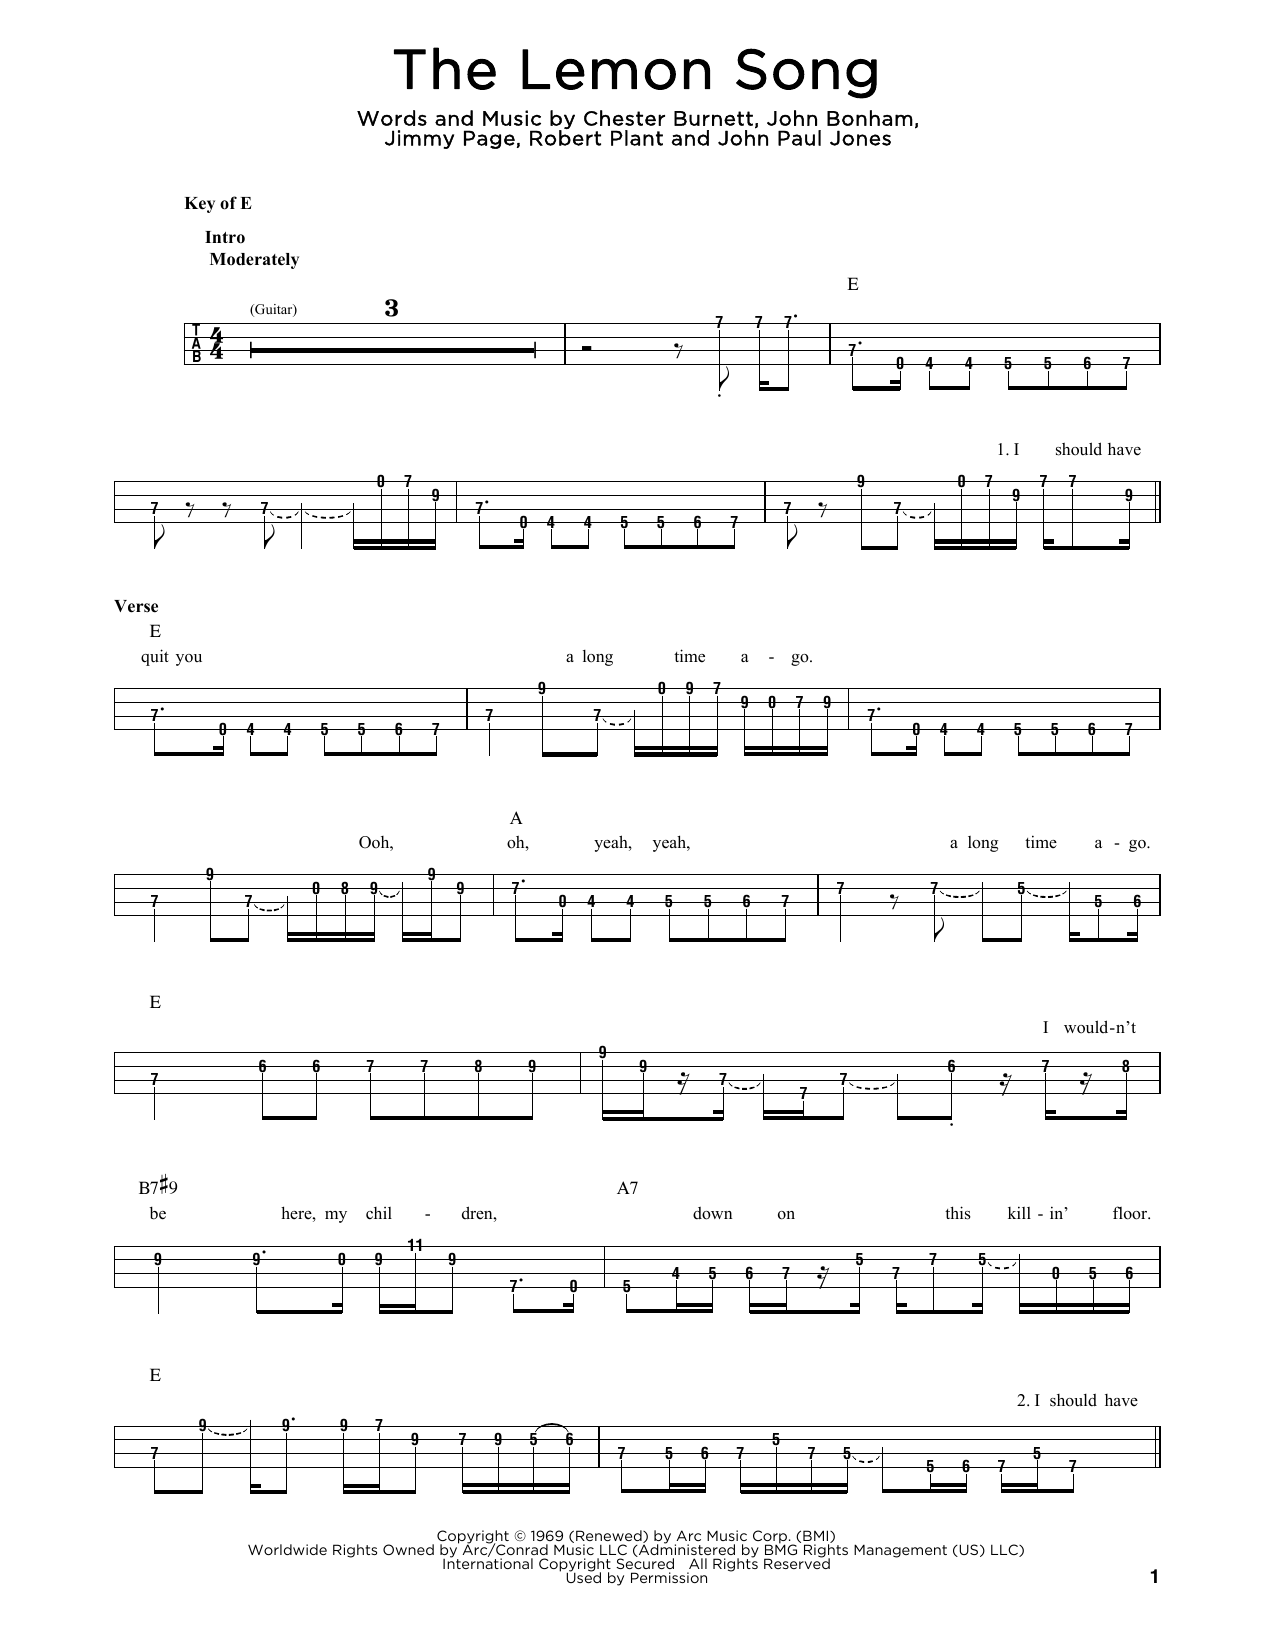 Chester Burnett The Lemon Song Sheet Music Notes & Chords for Bass - Download or Print PDF